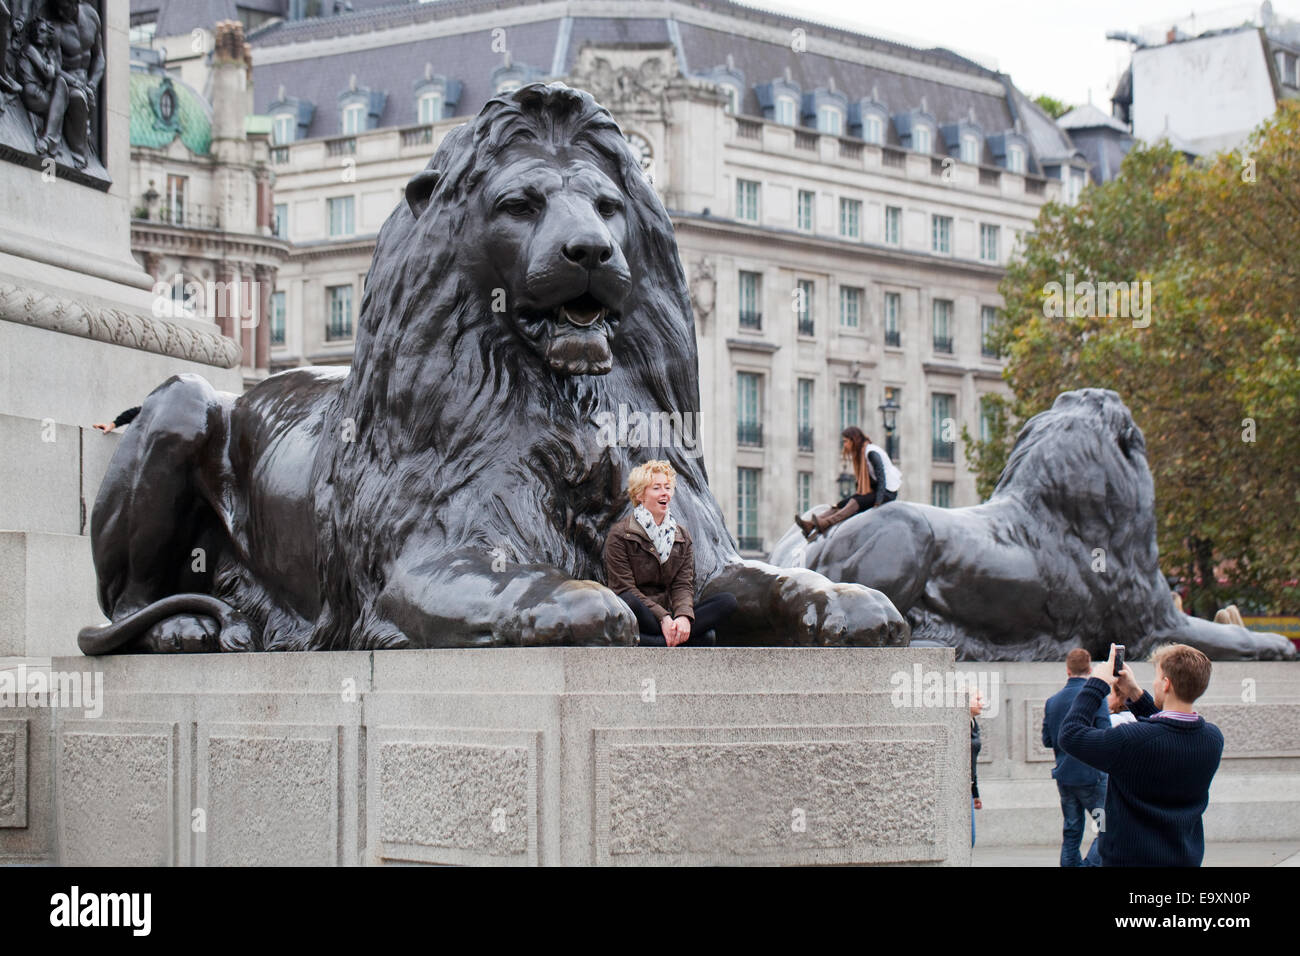 Trafalgar Square. London. England.  Ein "Landseer Löwe" auf Sockel im Vordergrund mit junge Frau posiert für Menschen zu fotografieren. Stockfoto